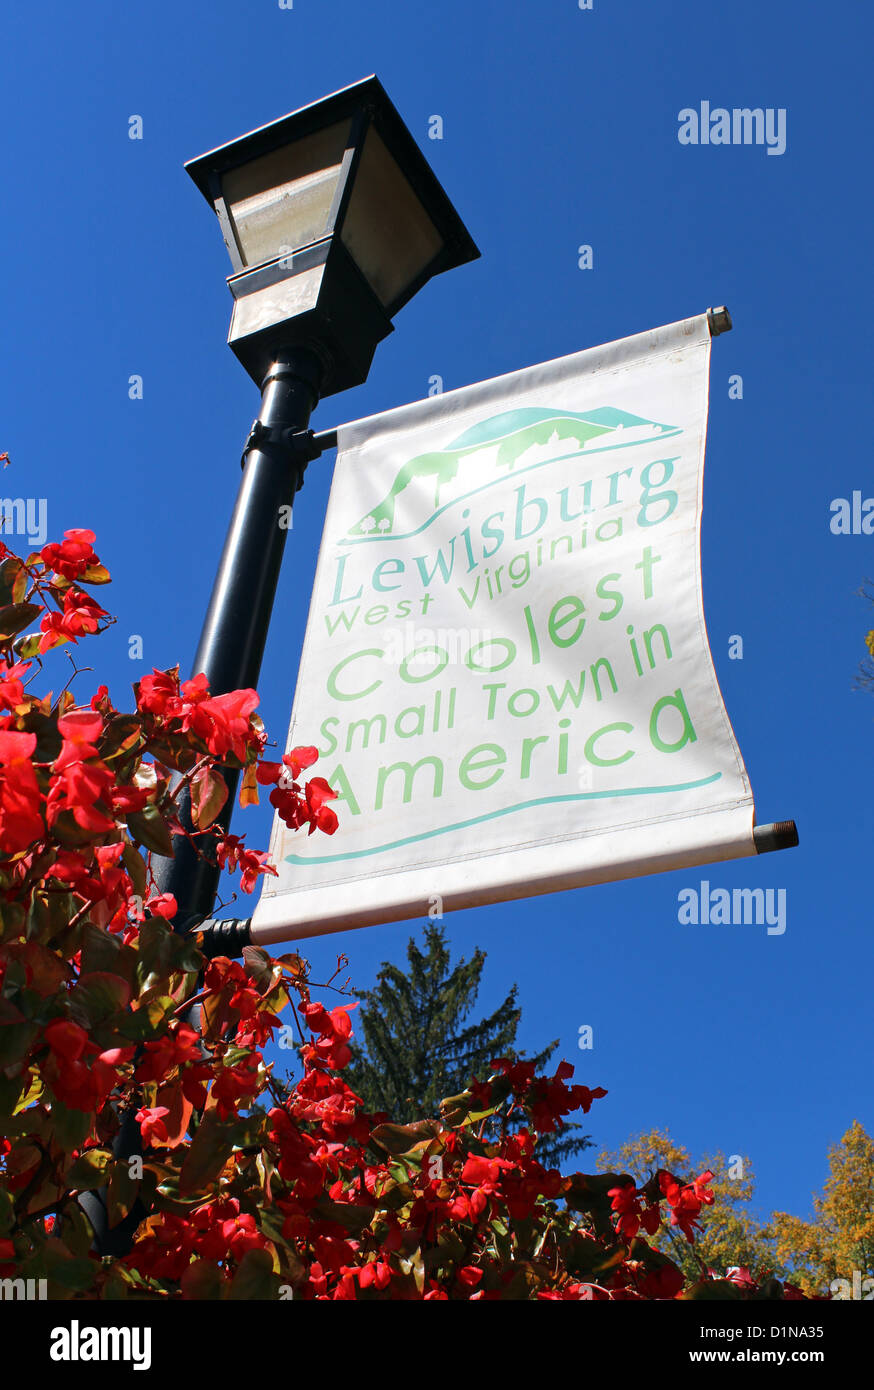 Lewisburg, coolsten Kleinstadt in Amerika Zeichen, West Virginia, America, USA Stockfoto